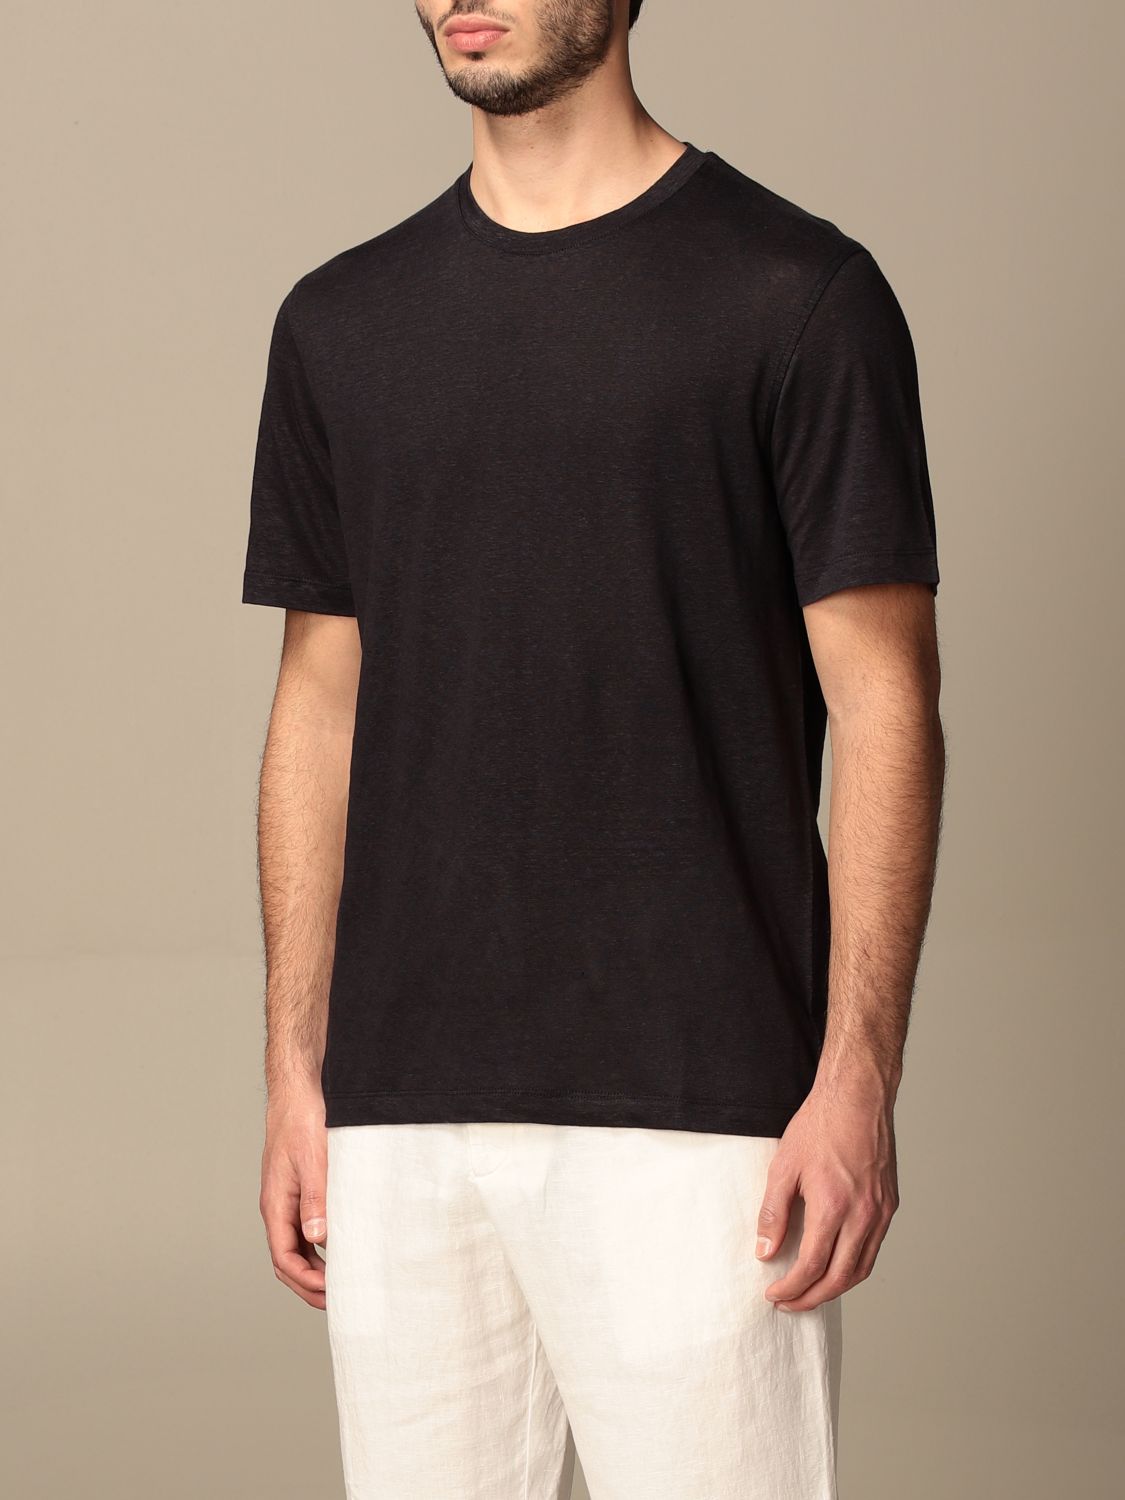 Zegna Outlet: Ermenegildo T-shirt in pure linen - Navy | T-Shirt Zegna ...